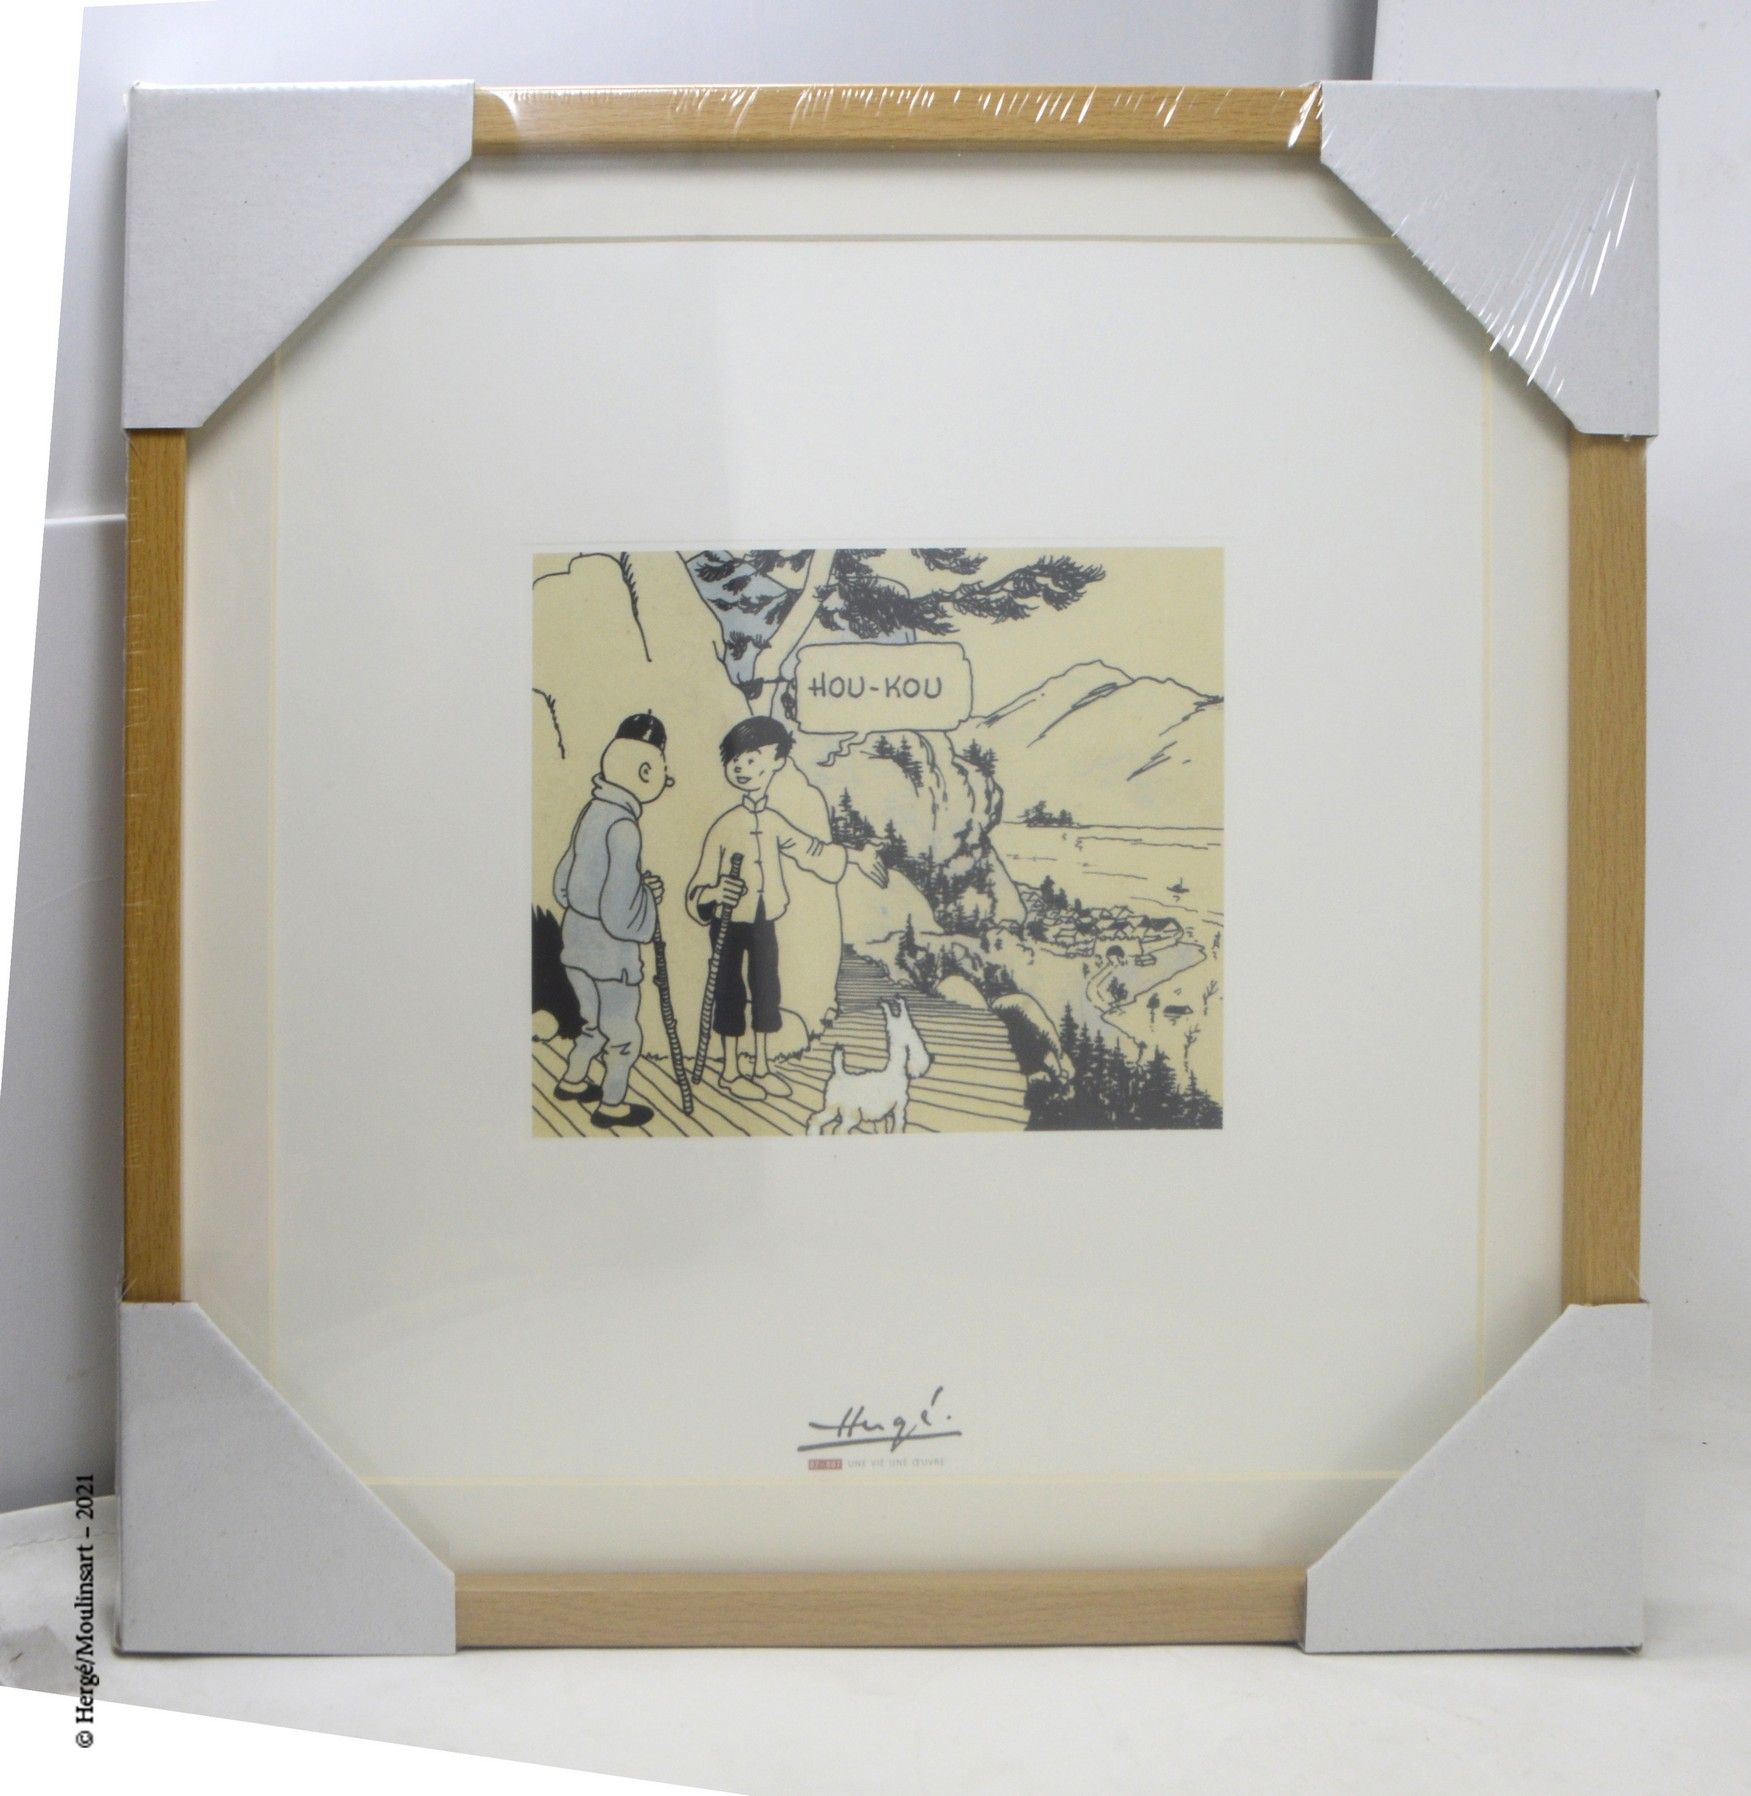 LE LOTUS BLEU HERGÉ/MOULINSART

Lithography Moulinsart : Hergé, a life, a work

&hellip;